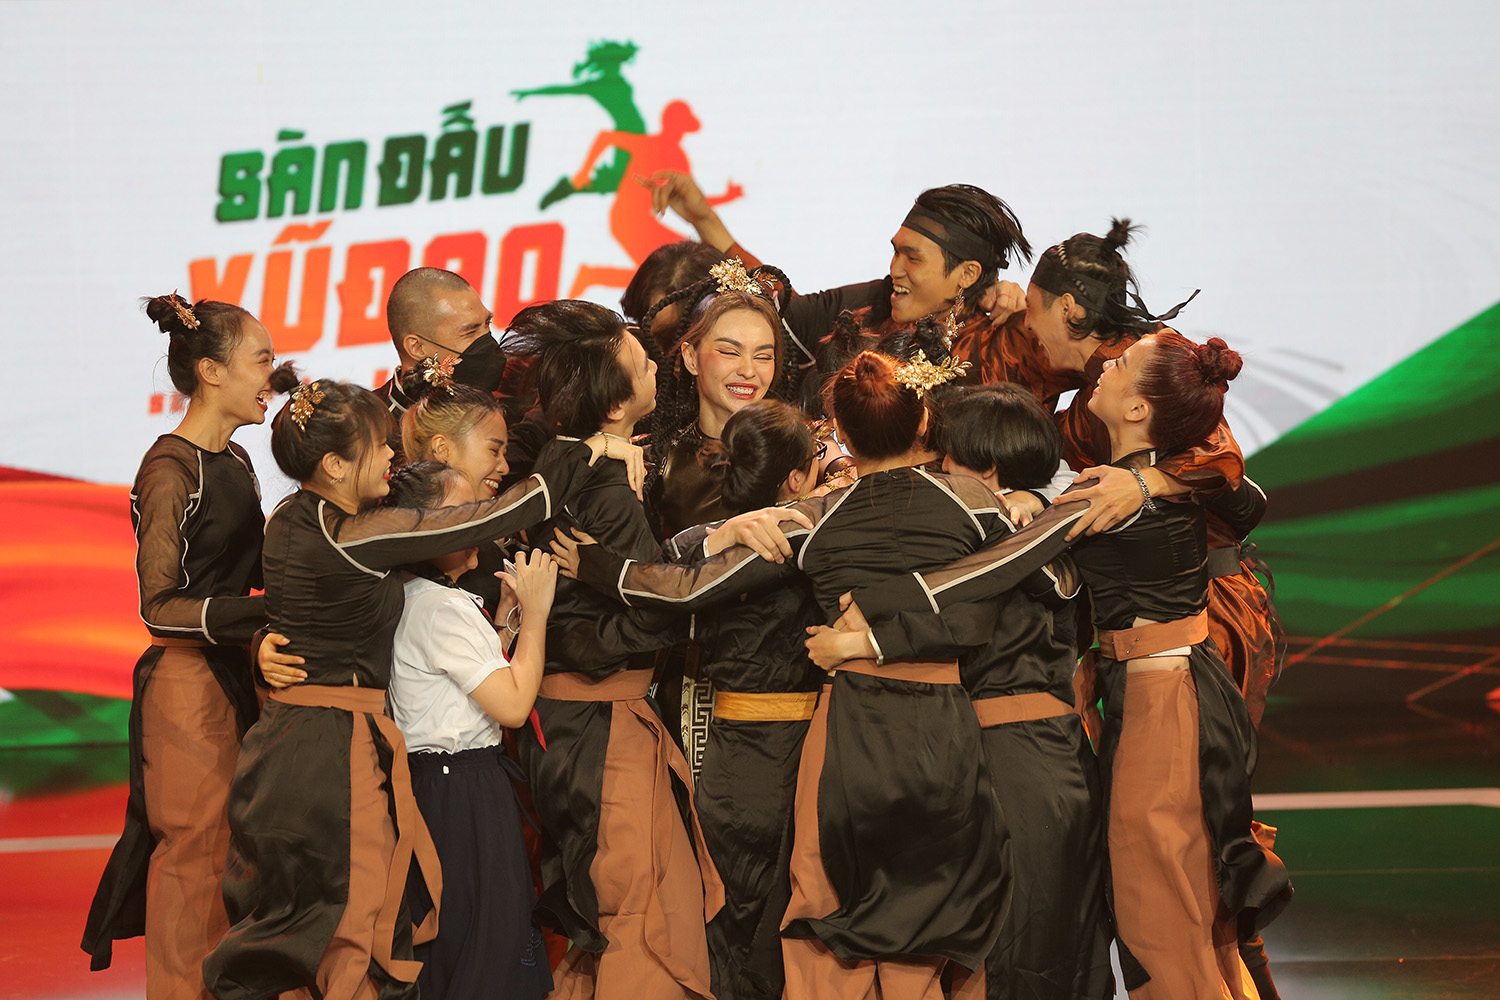 Liz Kim Cương giành giải quán quân Sàn đấu vũ đạo, Thiều Bảo Trang theo sát với giải Á quân - ảnh 4